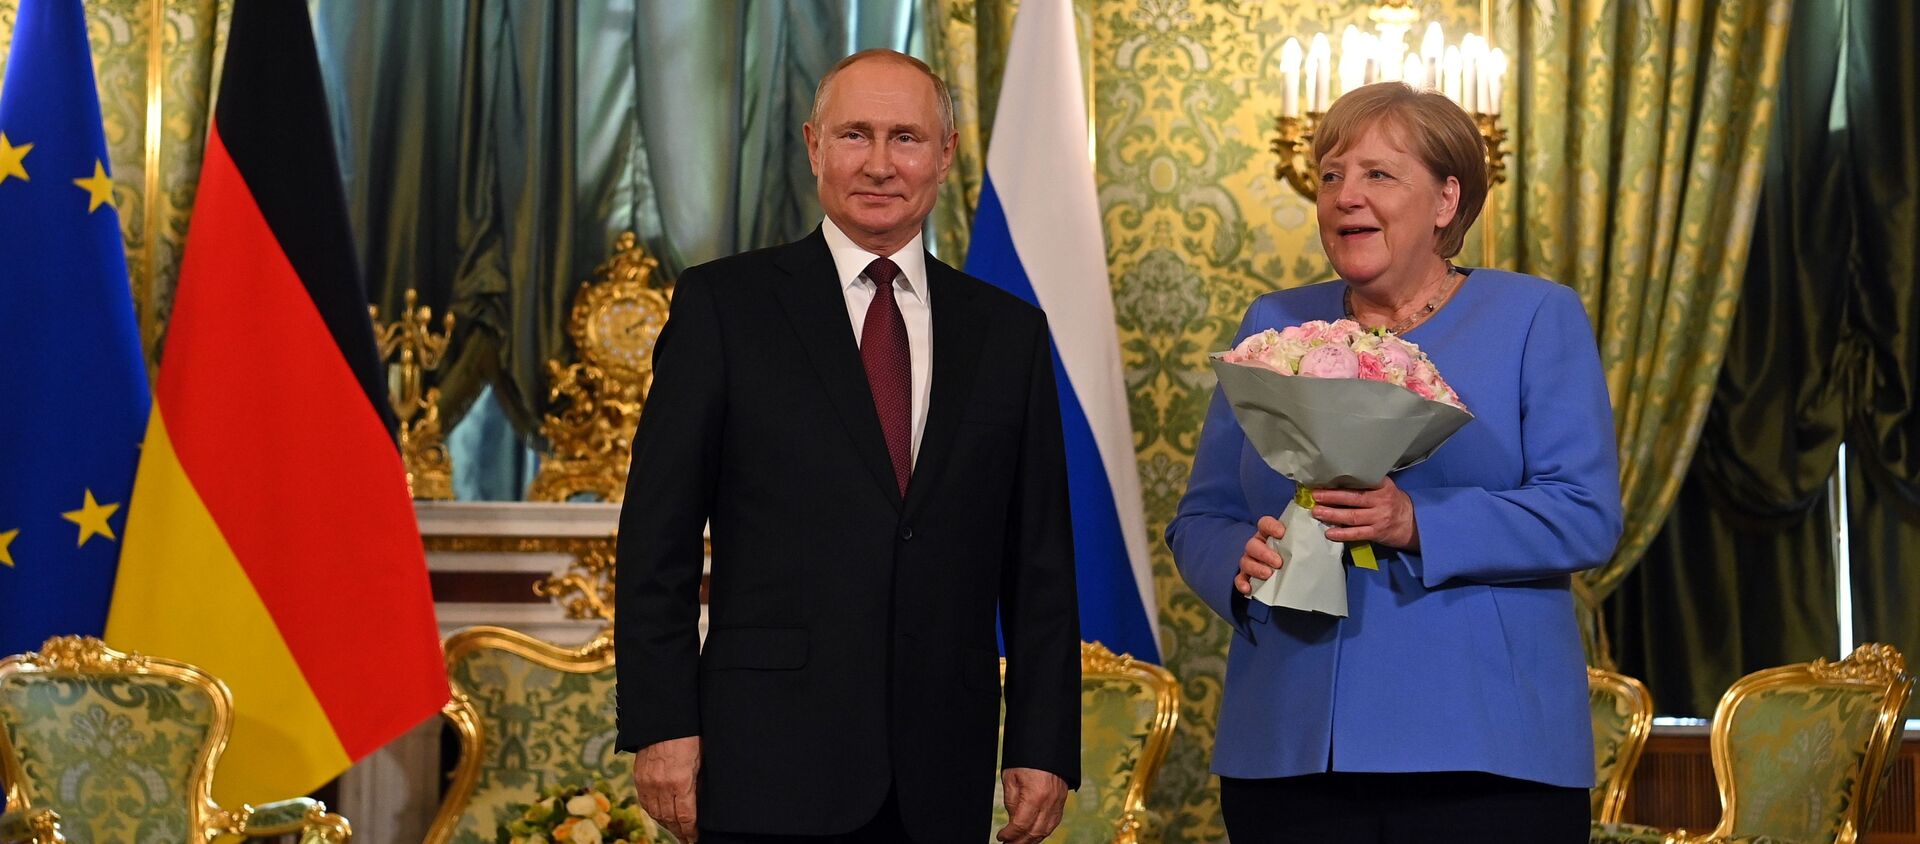  Vladimir Putin və Angela Merkel, arxiv şəkli - Sputnik Грузия, 1920, 20.08.2021